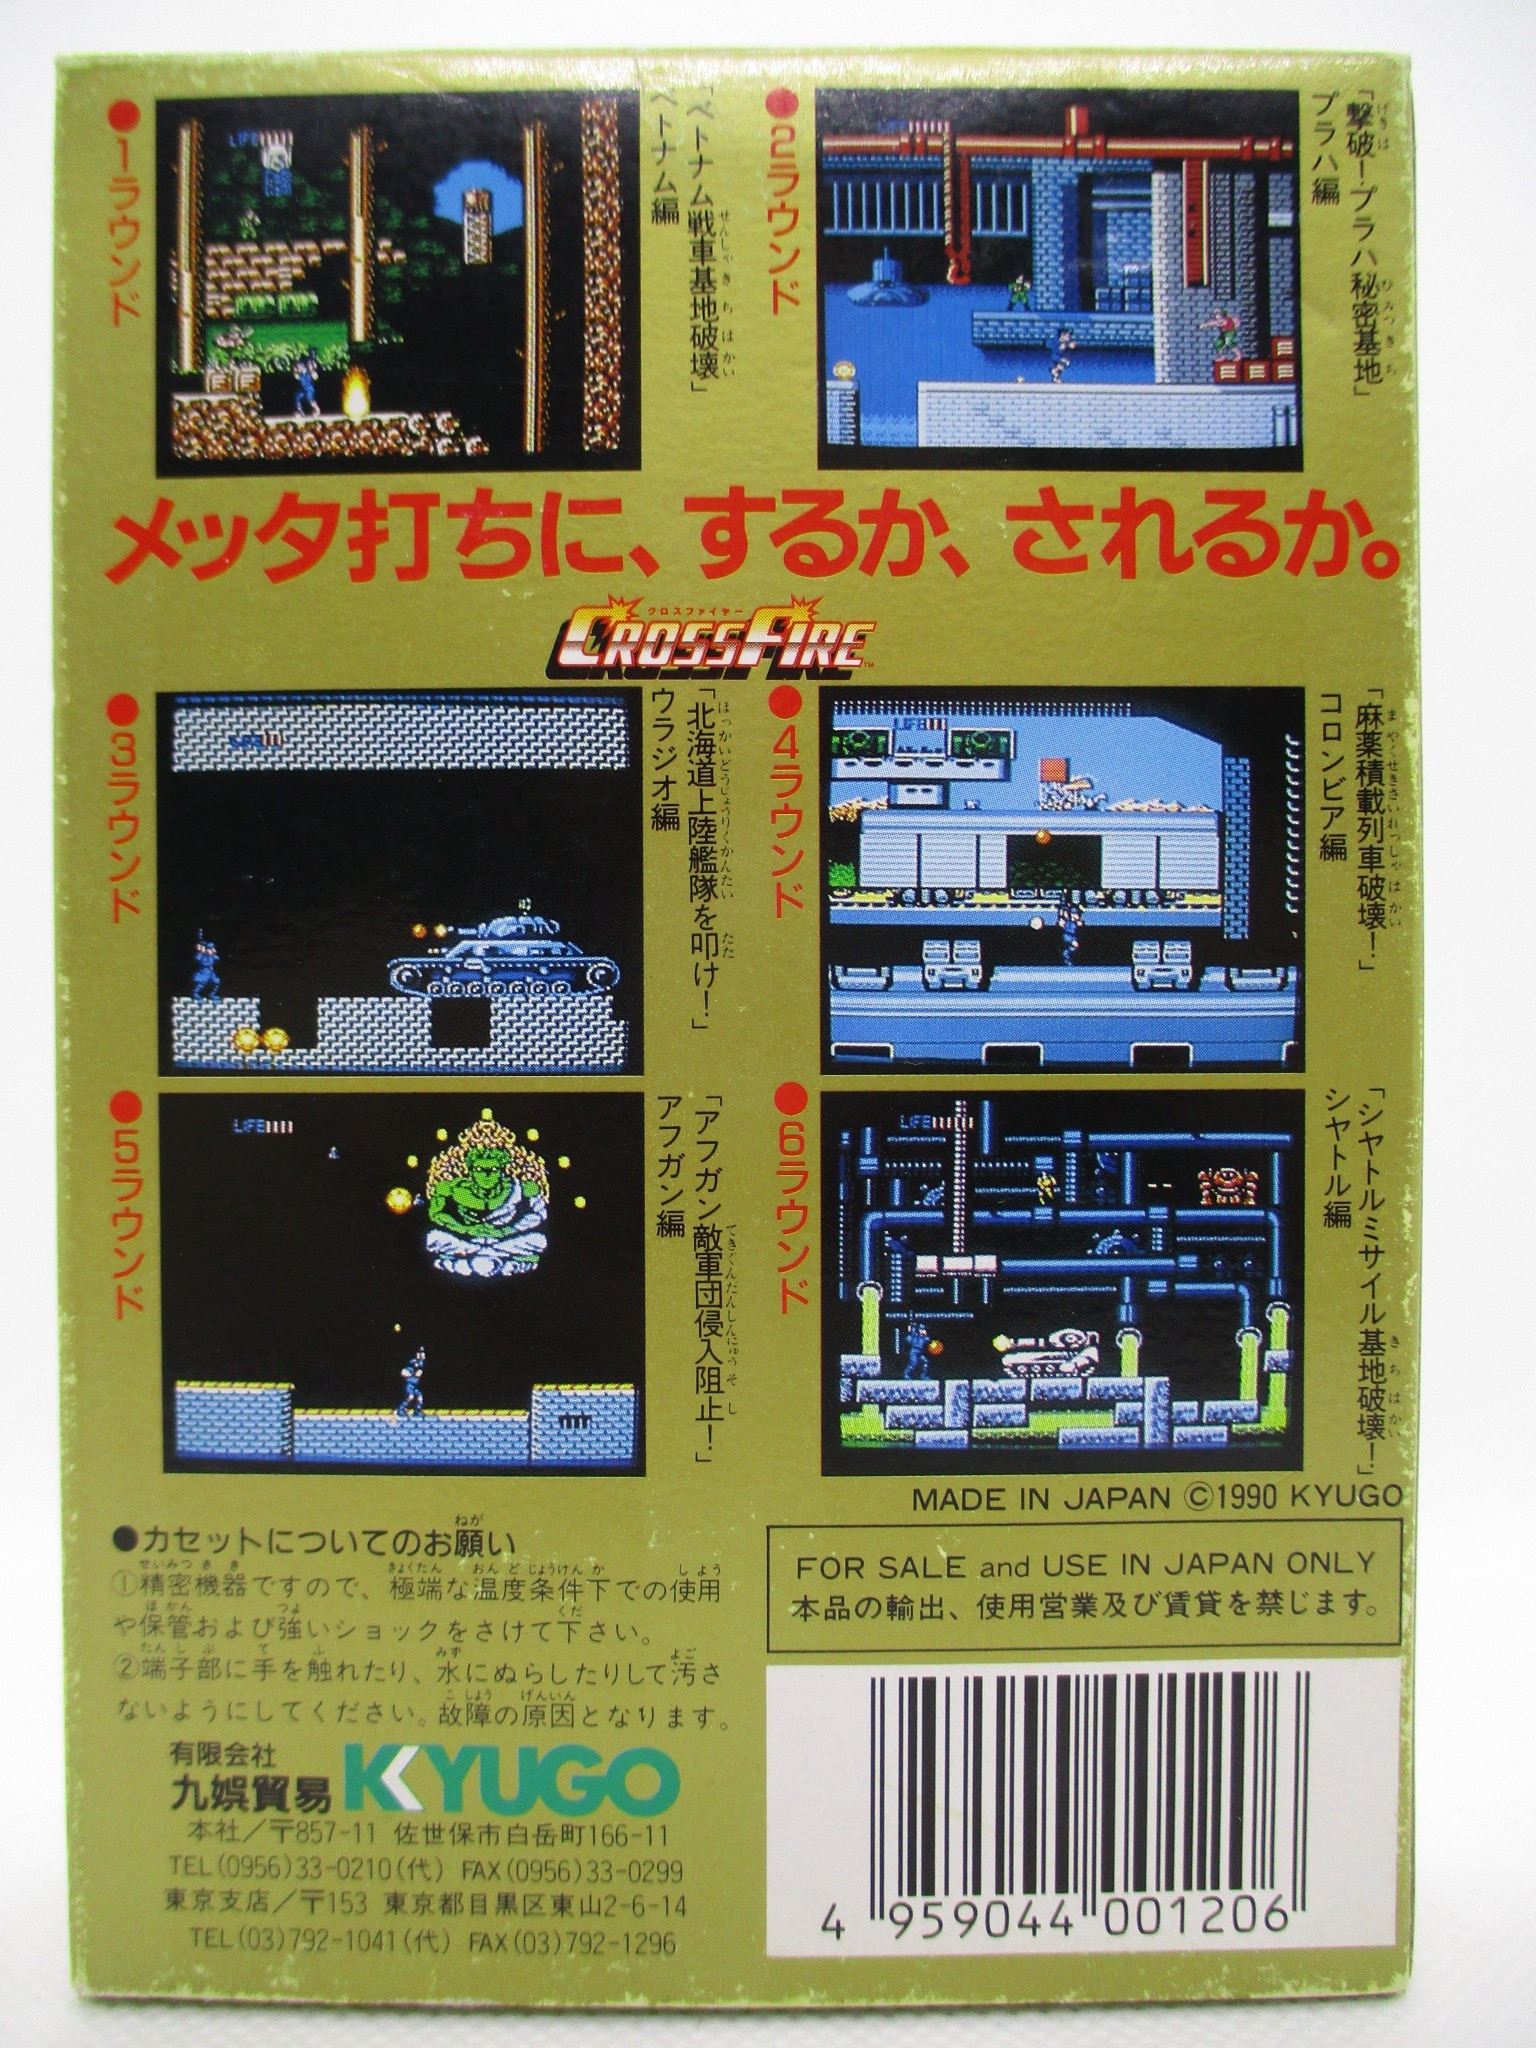 クロスファイヤー ファミコンソフト 鬼レア 九娯貿易 - 家庭用ゲームソフト